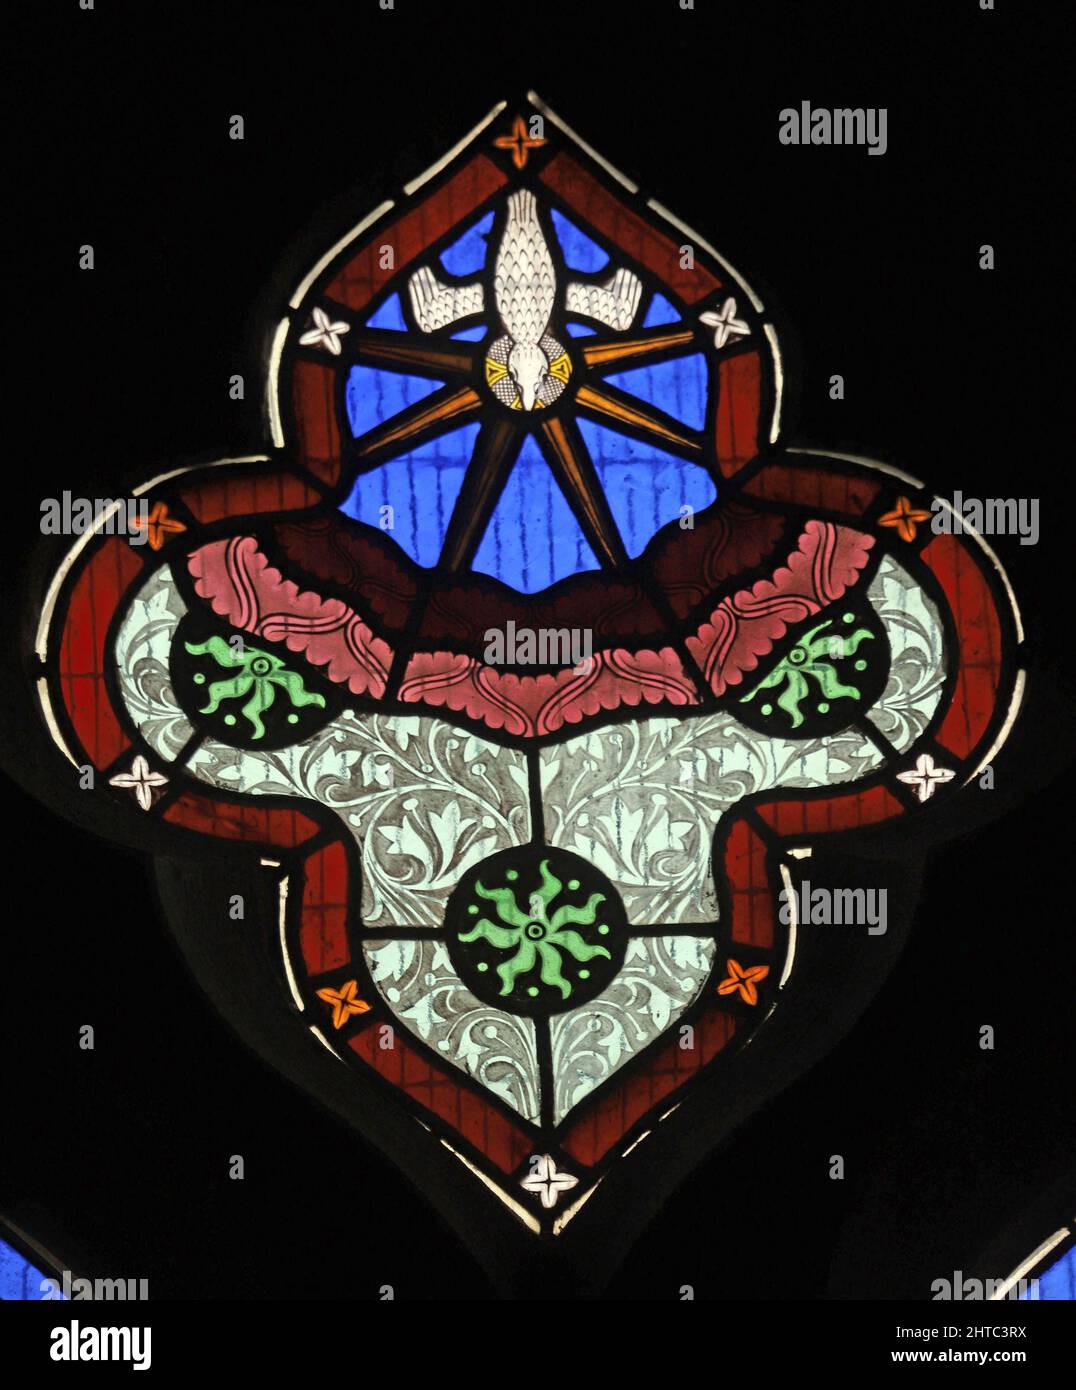 Vitraux de Frederick Preedy représentant la descente de l'Esprit Saint. Église Saint-Laurent, Stretton Grandison, Herefordshire Banque D'Images